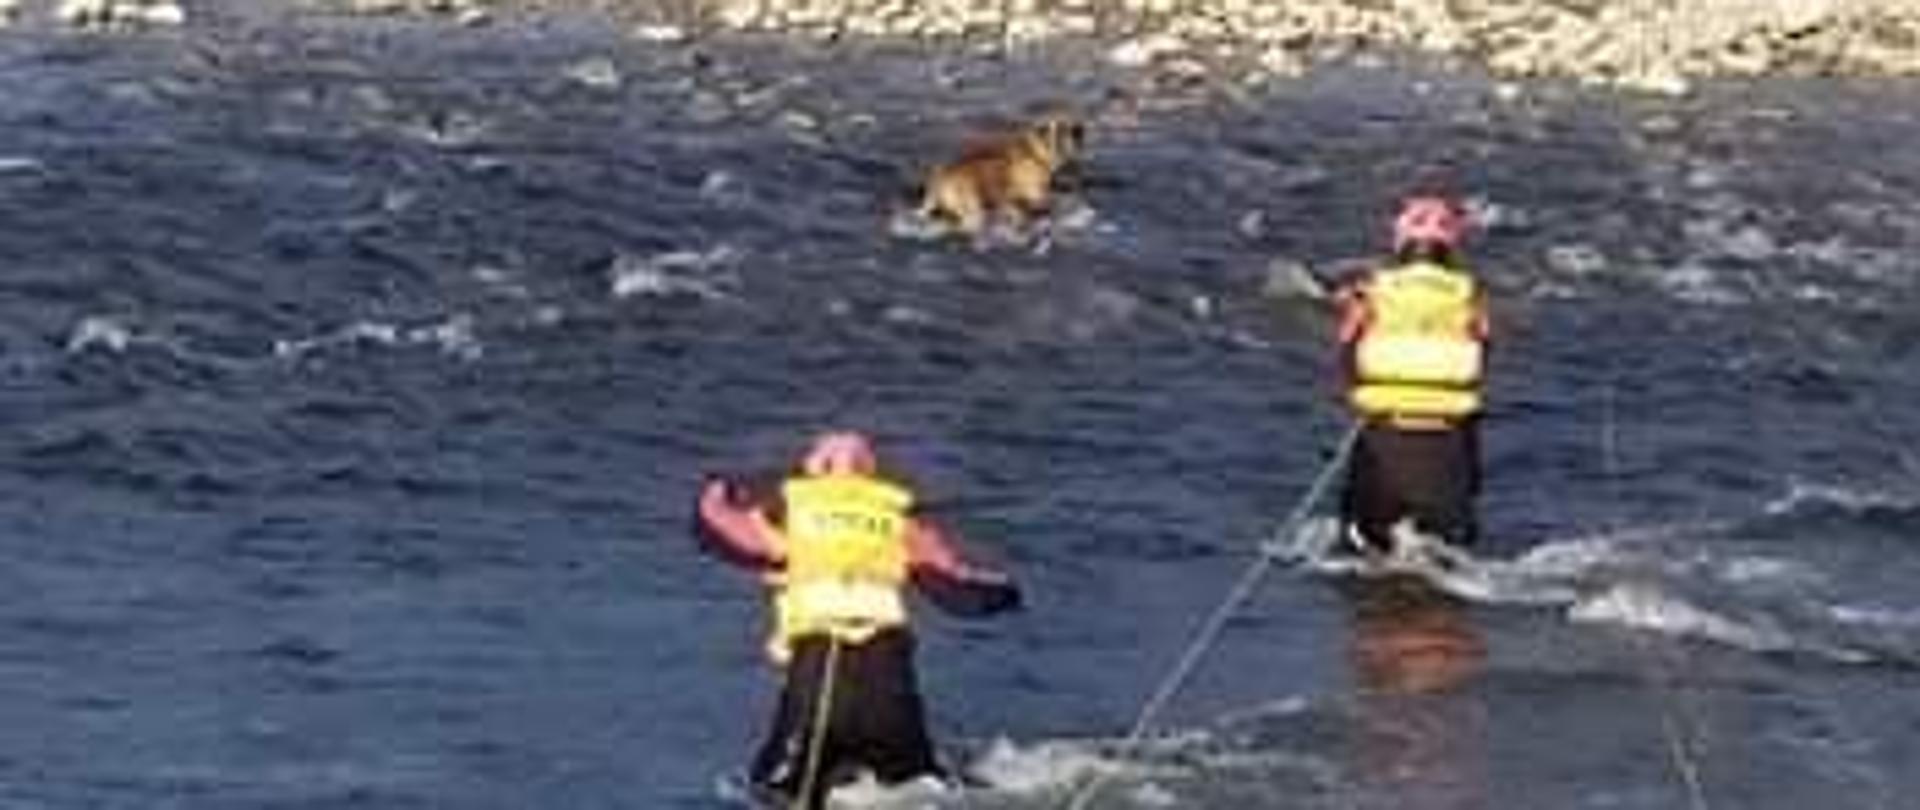 Dwóch strażaków zabezpieczonych w kamizelki oraz linki idzie do psa przebywającego w wodzie w pobliżu wysepki na rzece Poprad